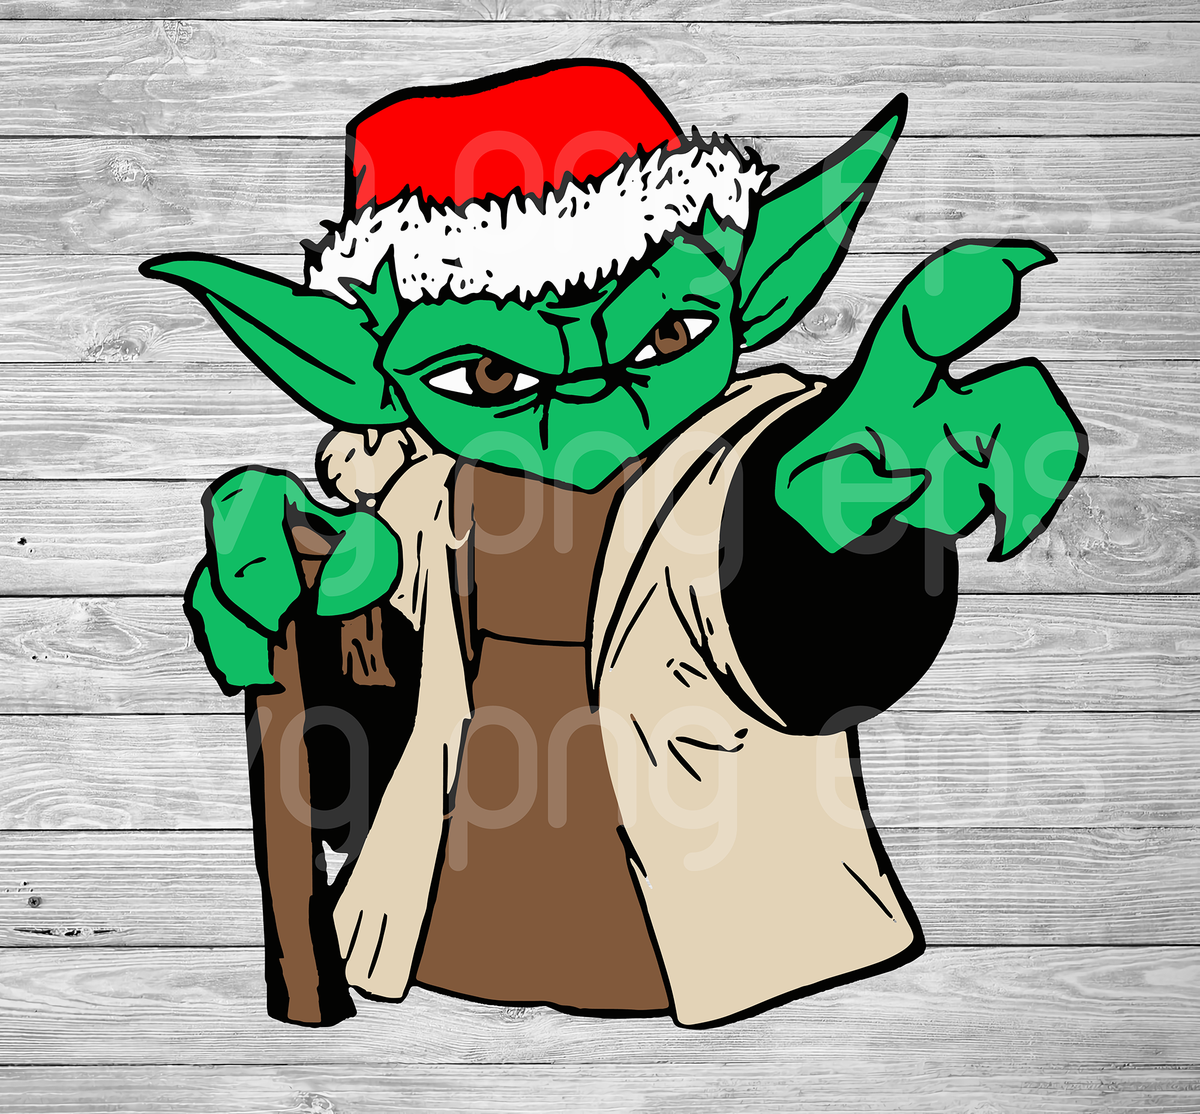 Download Yoda Santa Christmas Svg Yoda Clipart Yoda Clipart Yoda Cutting Fil Beetanosvg Scalable Vector Graphics PSD Mockup Templates